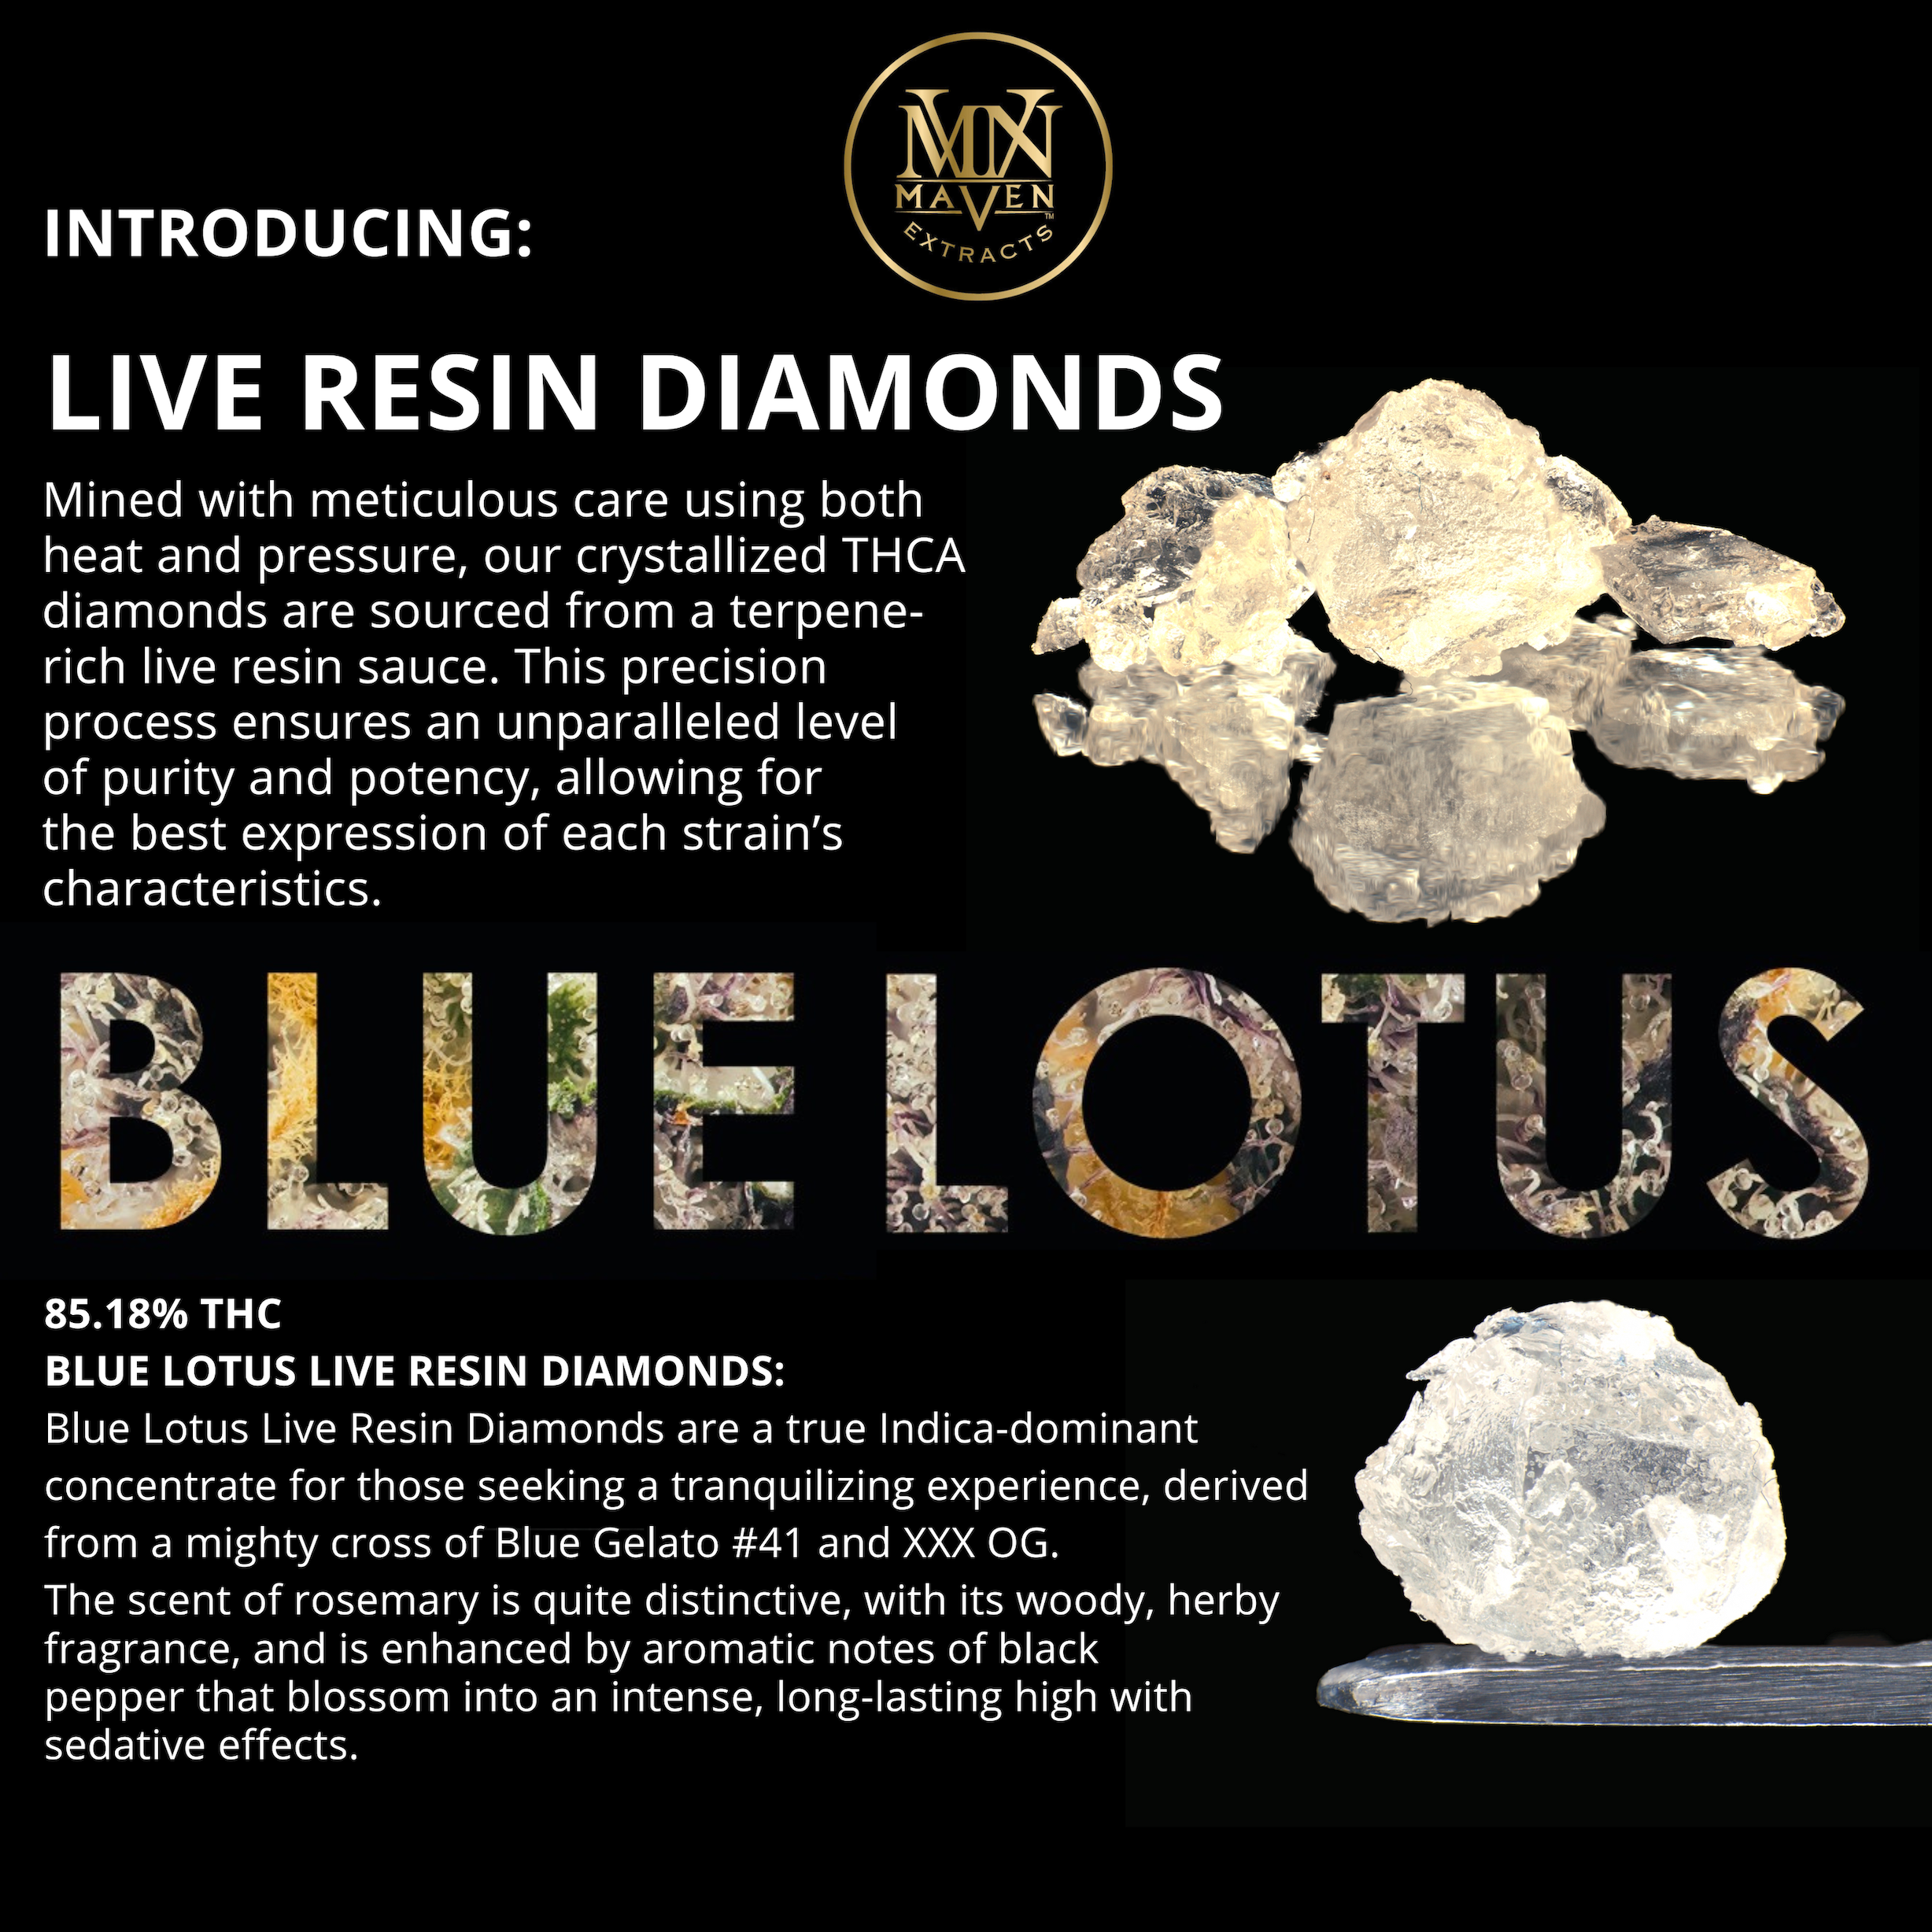 Blue Lotus Live Resin Diamonds